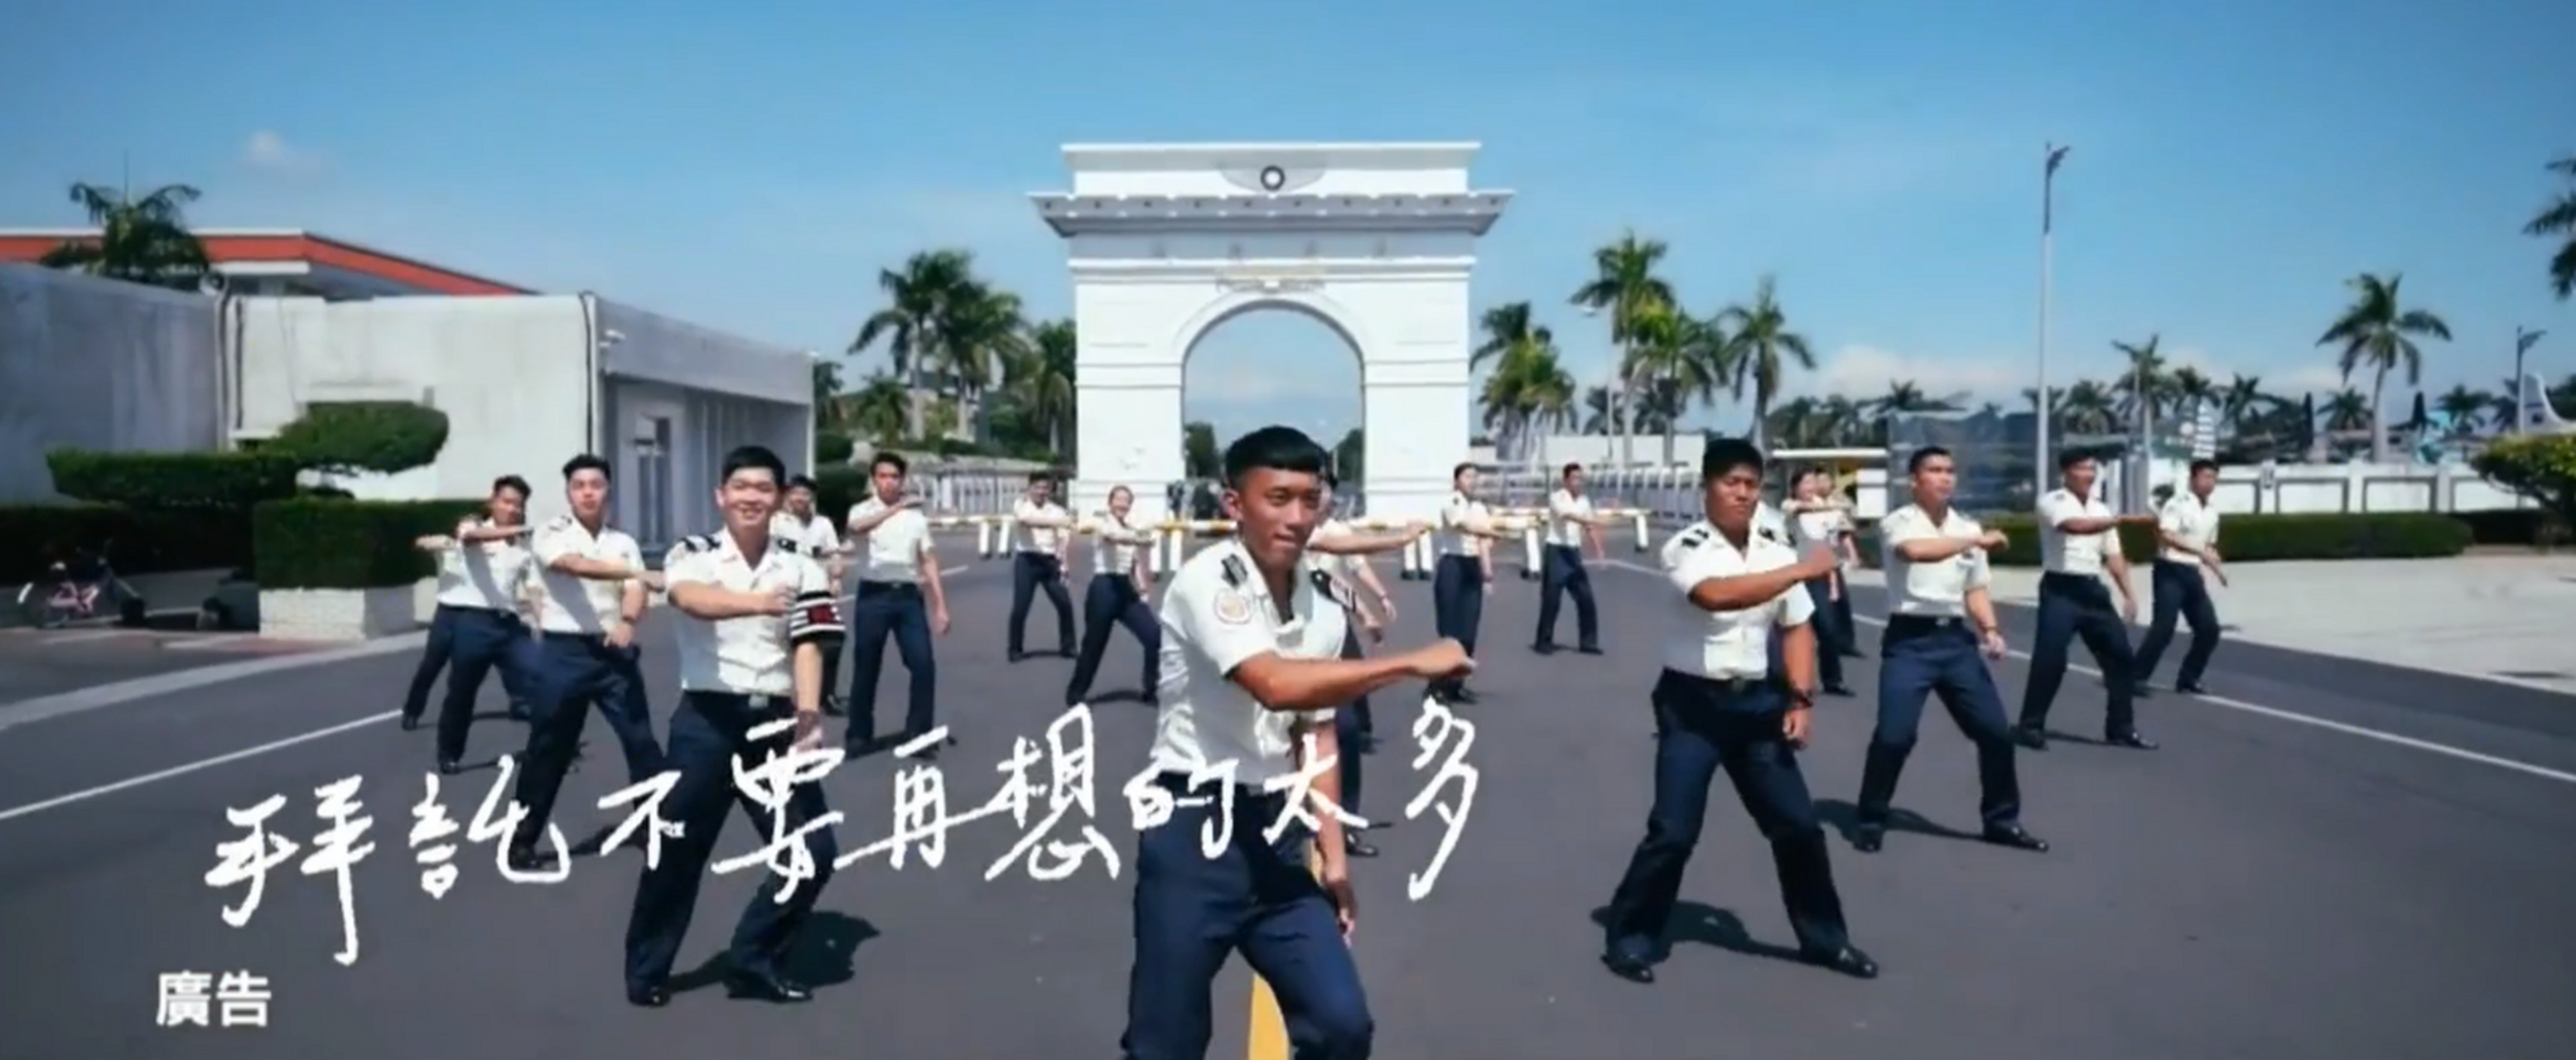 台湾对比两岸征兵宣传风格迥异# 近日台军募兵广告再次引起人们的